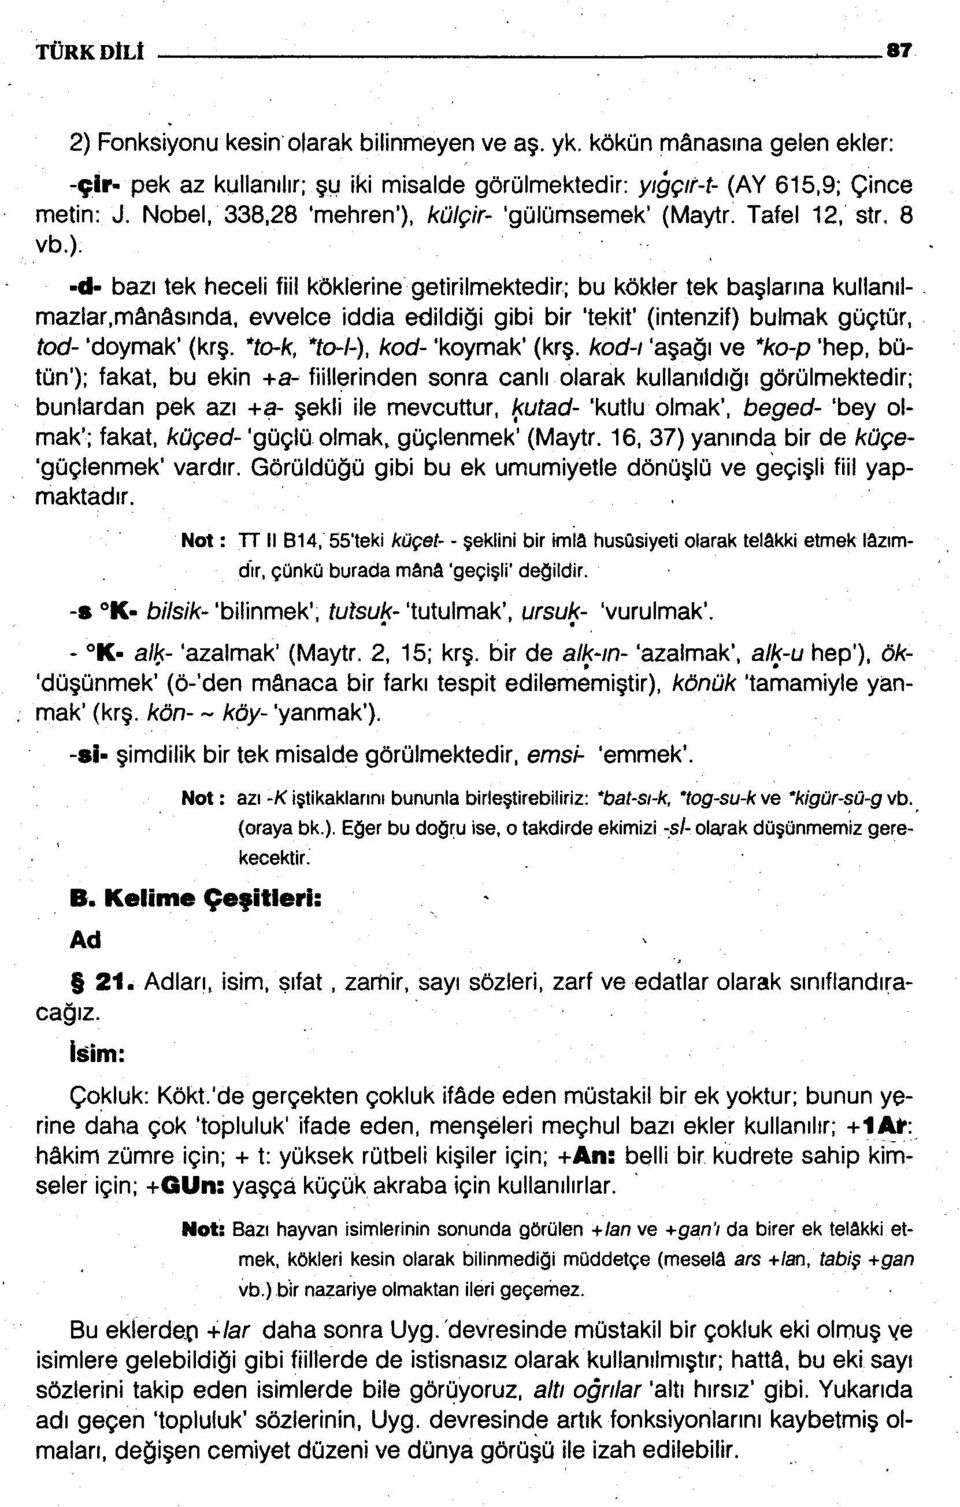 kulgir- 'gulumsemek' (Maytr. Tafel 12, str. 8 vb.).